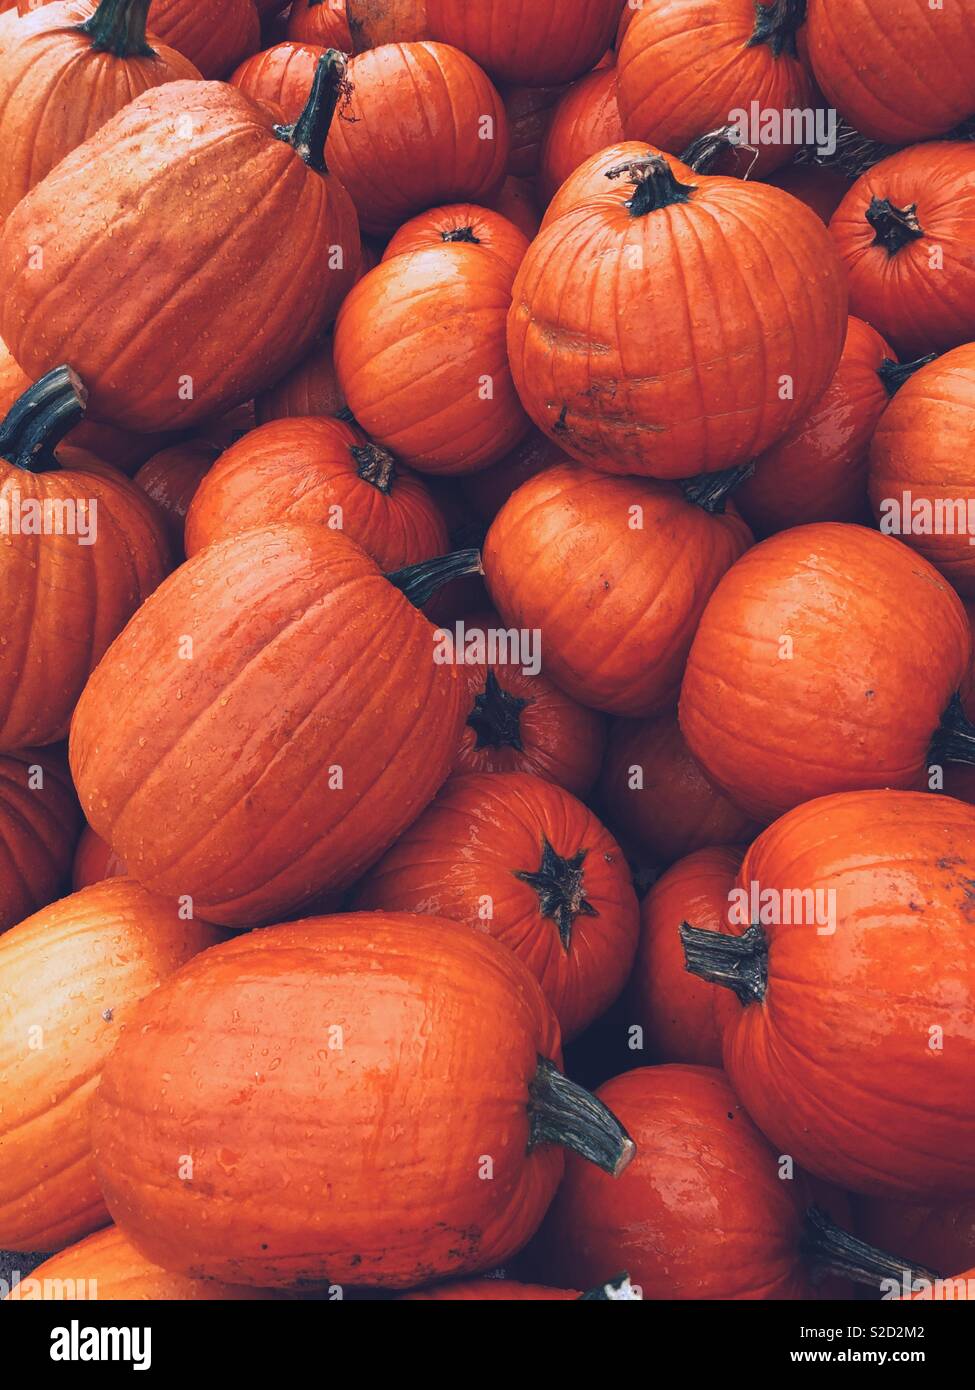 La couleur orange est la tendance de l'automne Banque D'Images